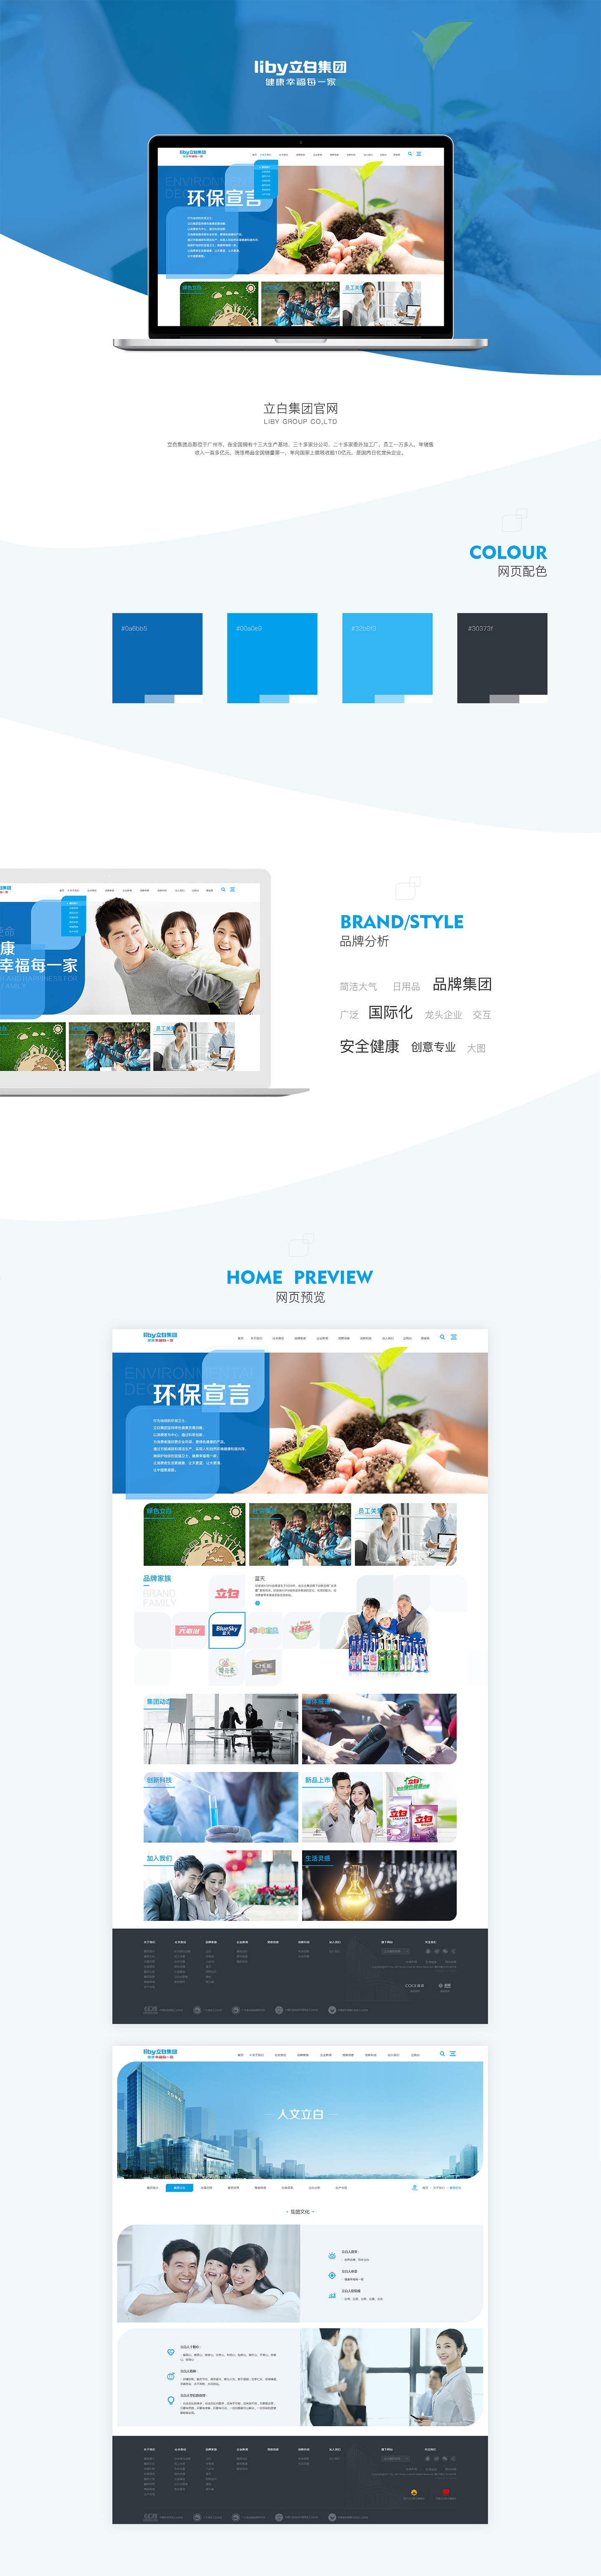 广州立白企业集团有限公司-万户网络设计制作网站